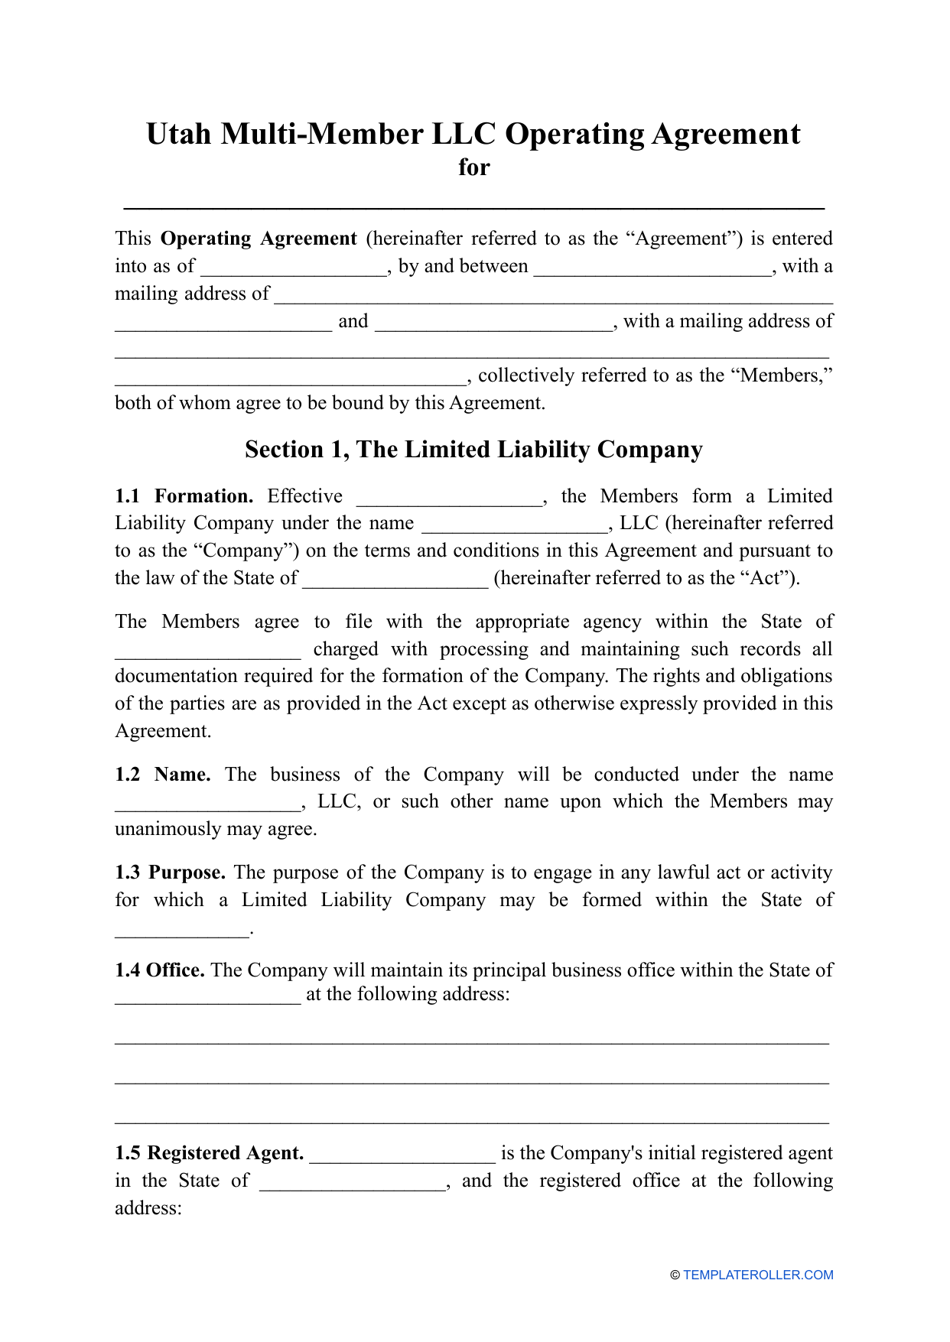 Multi-Member LLC Operating Agreement Template - Utah, Page 1